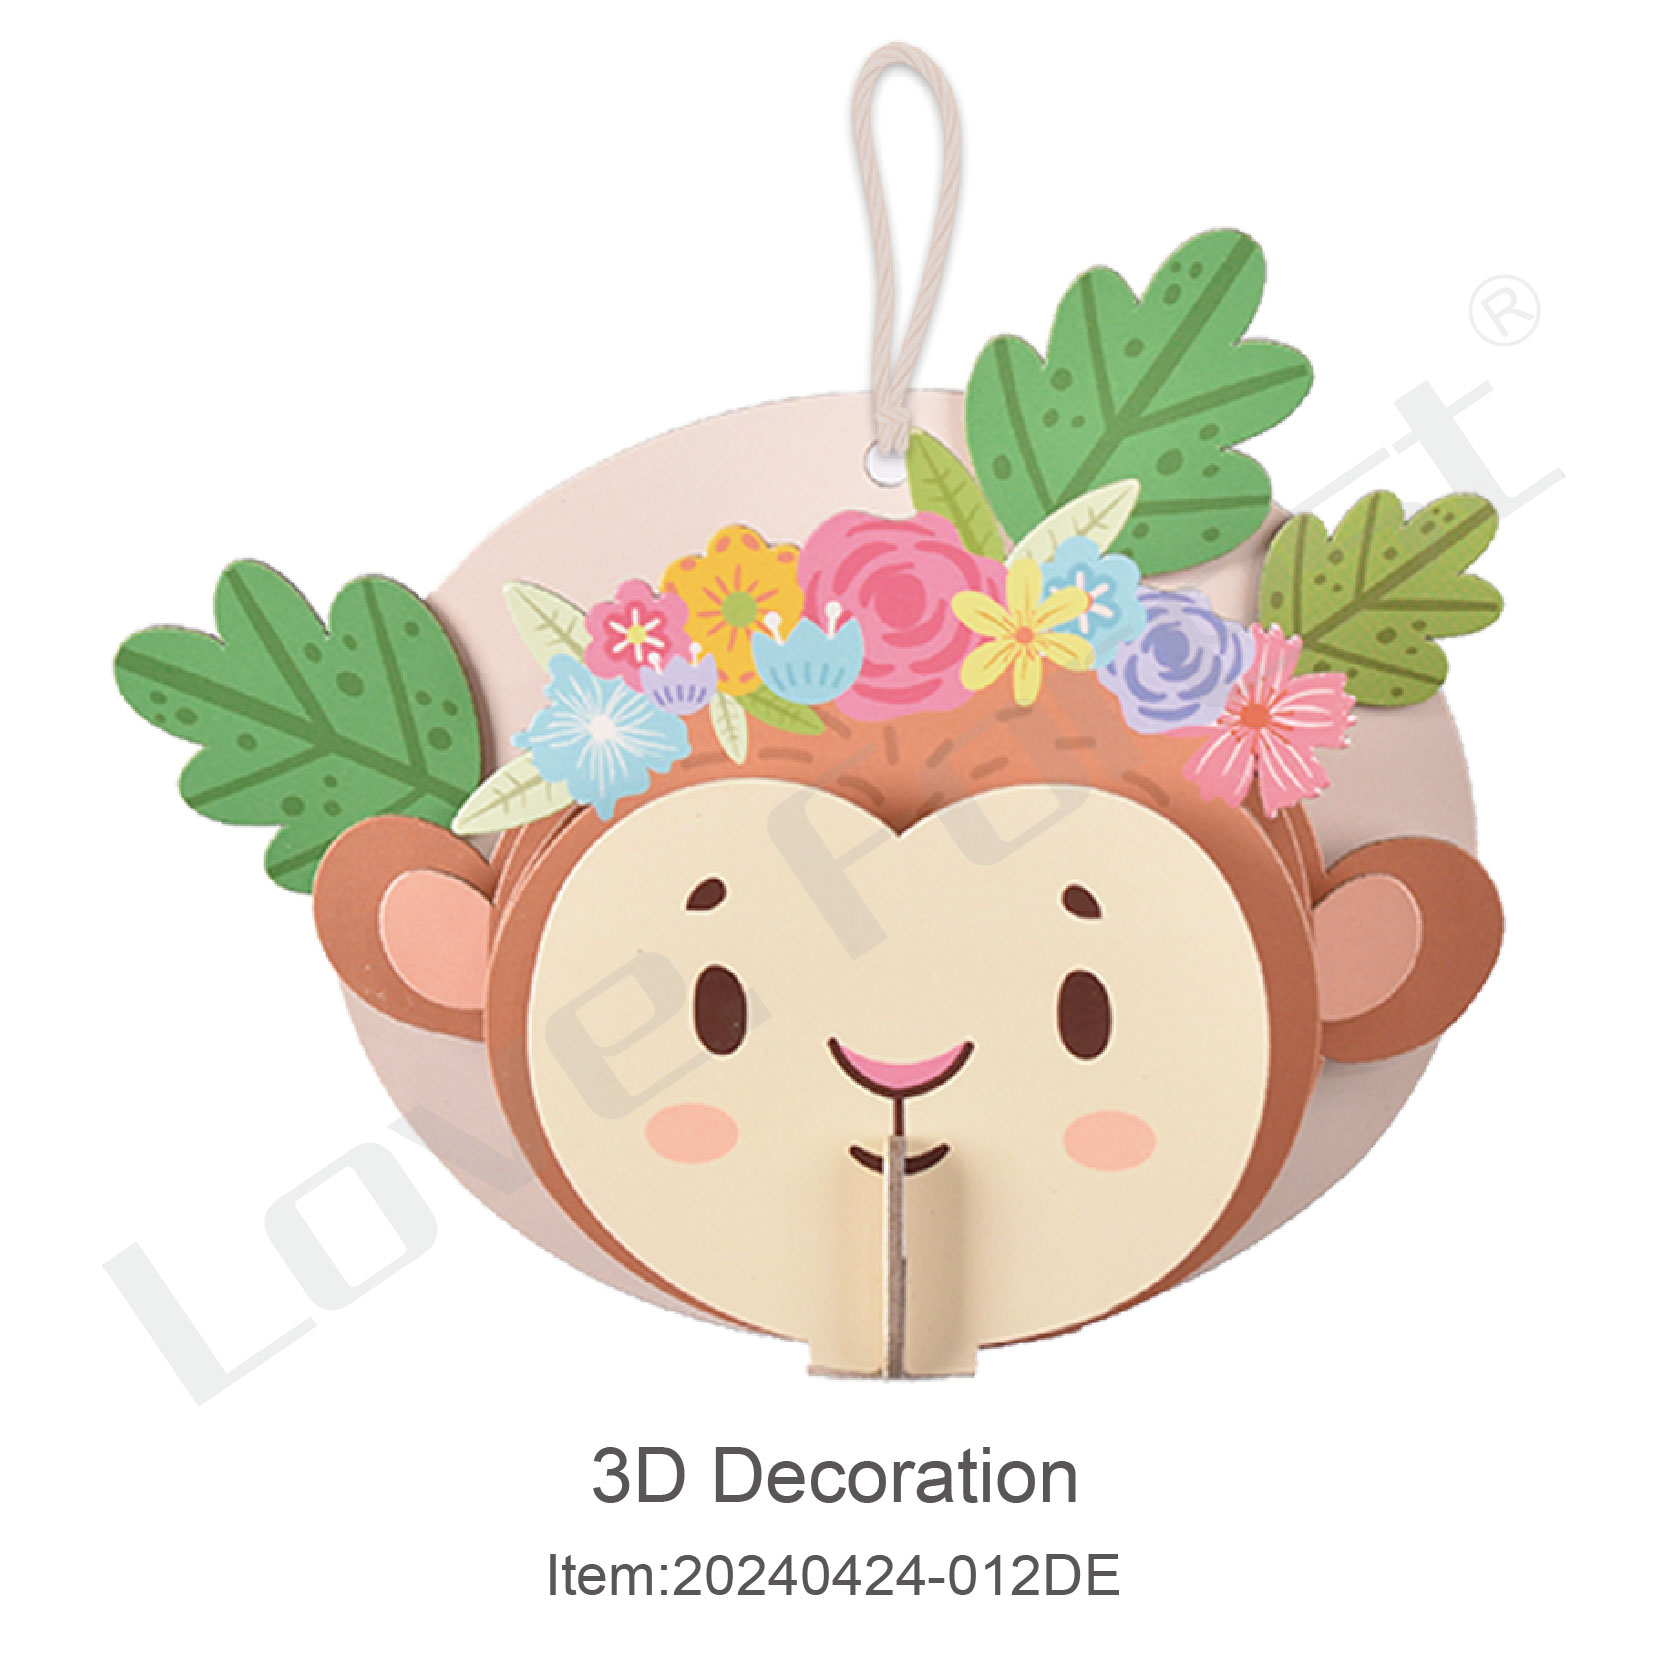 3D Decoration